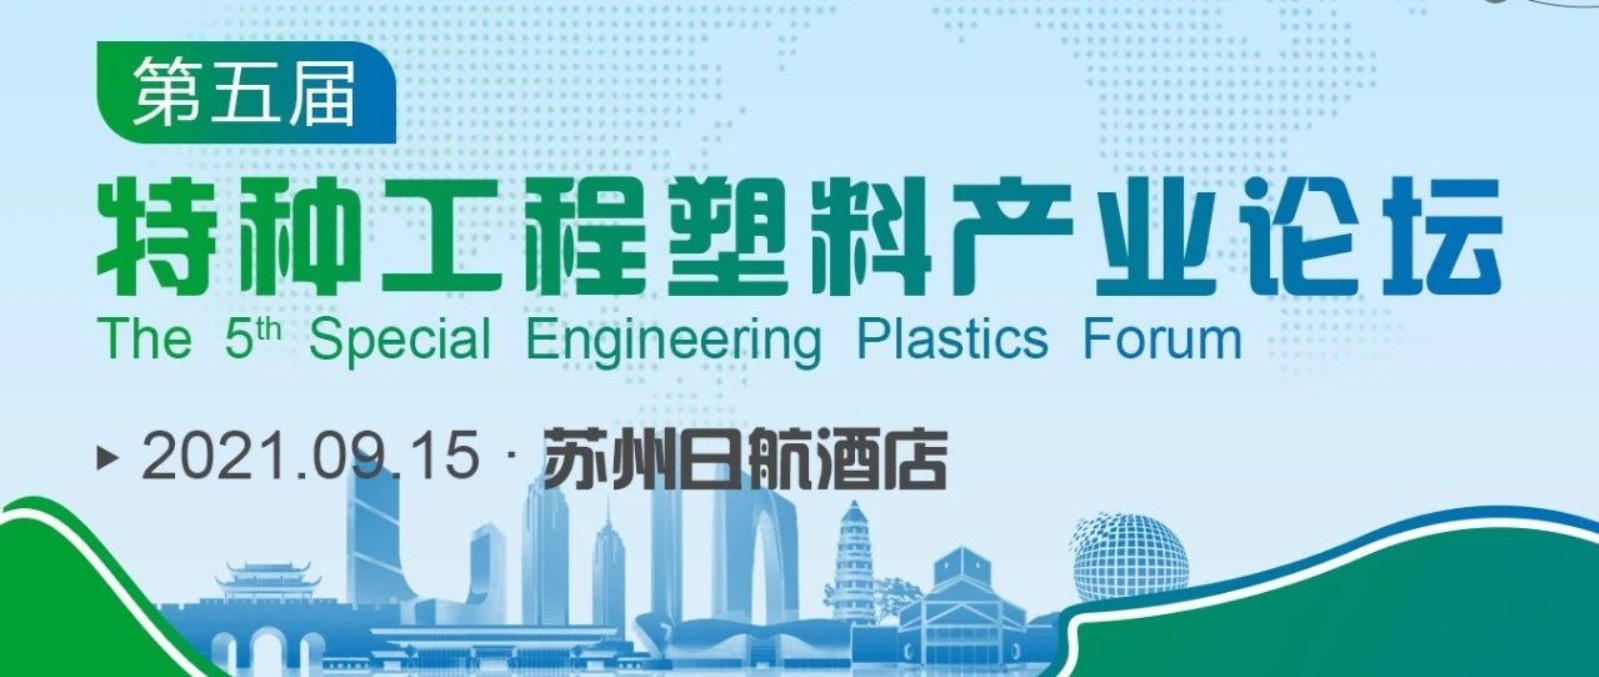 米同新材料受邀参加第五届特种工程塑料产业论坛